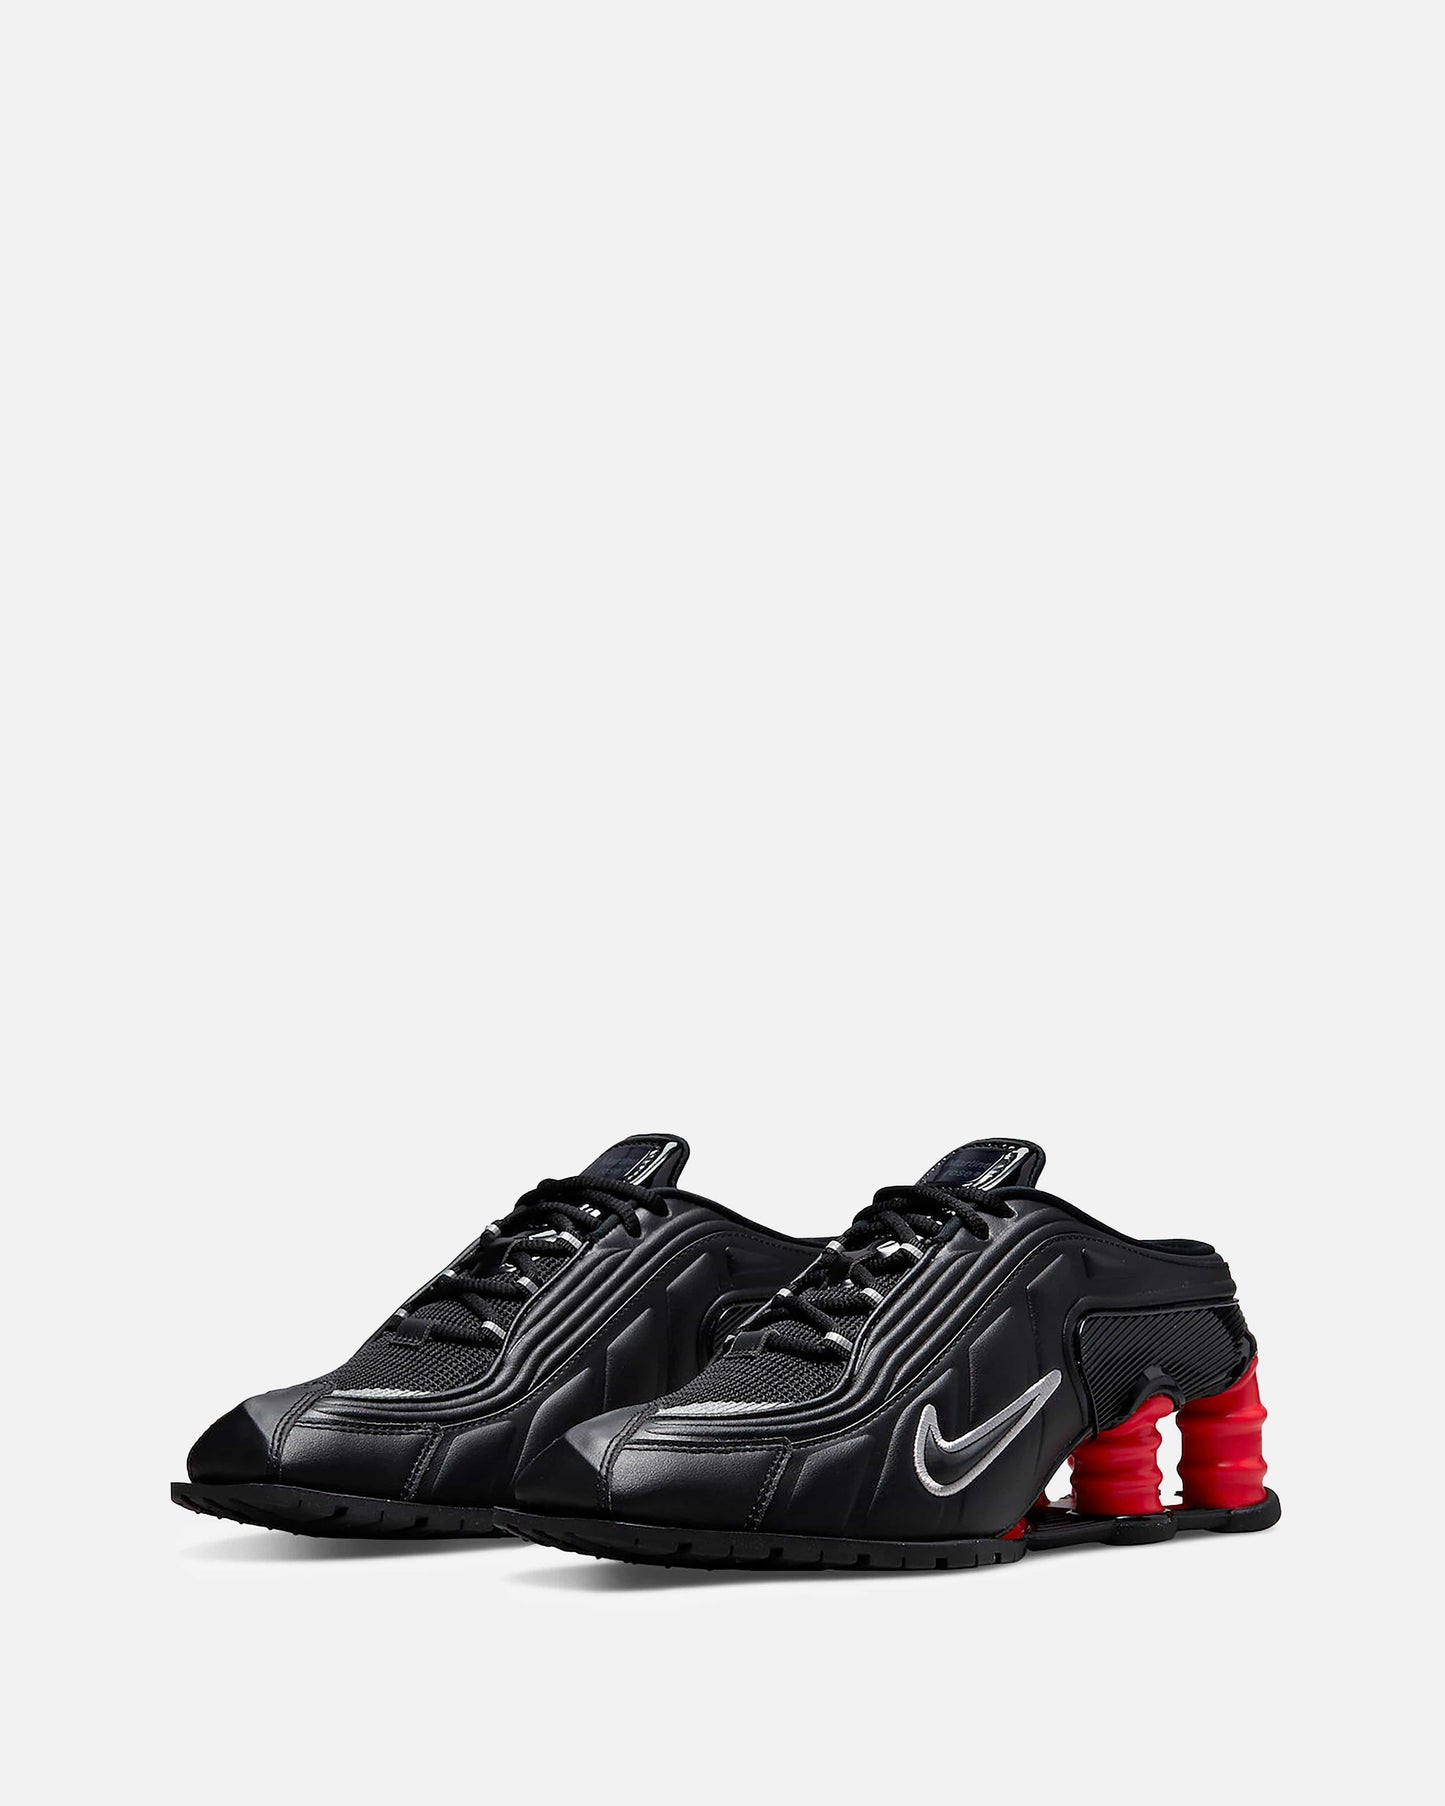 Nike Releases Nike Shox MR4 x Martine Rose 'Black'